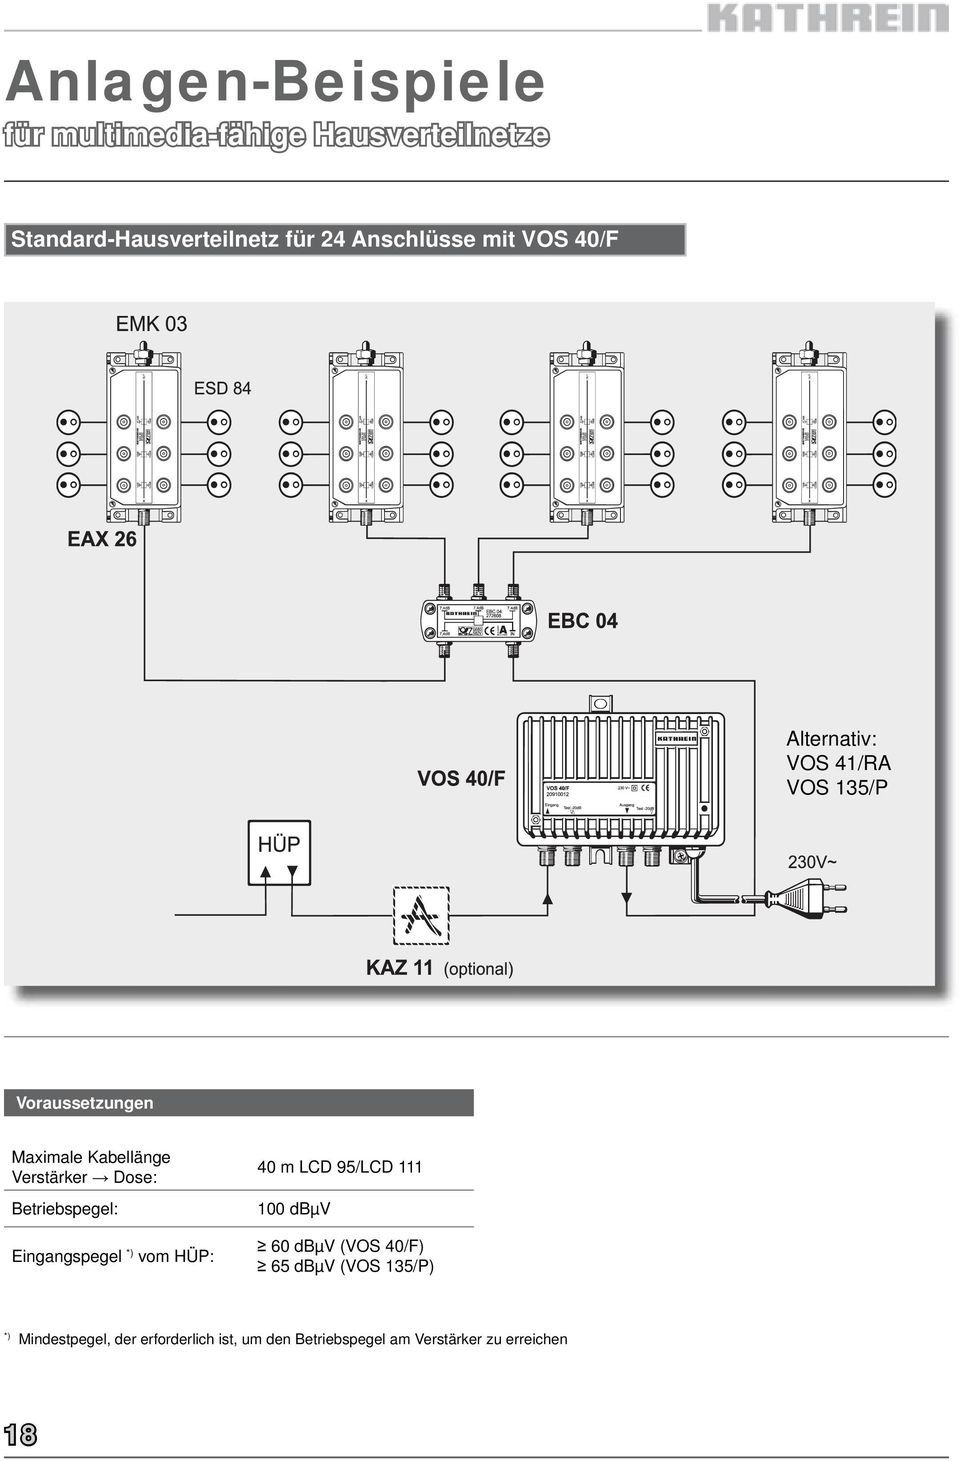 Verstärker Dose: Betriebspegel: Eingangspegel *) vom HÜP: 40 m LCD 95/LCD 111 100 dbµv 60 dbµv